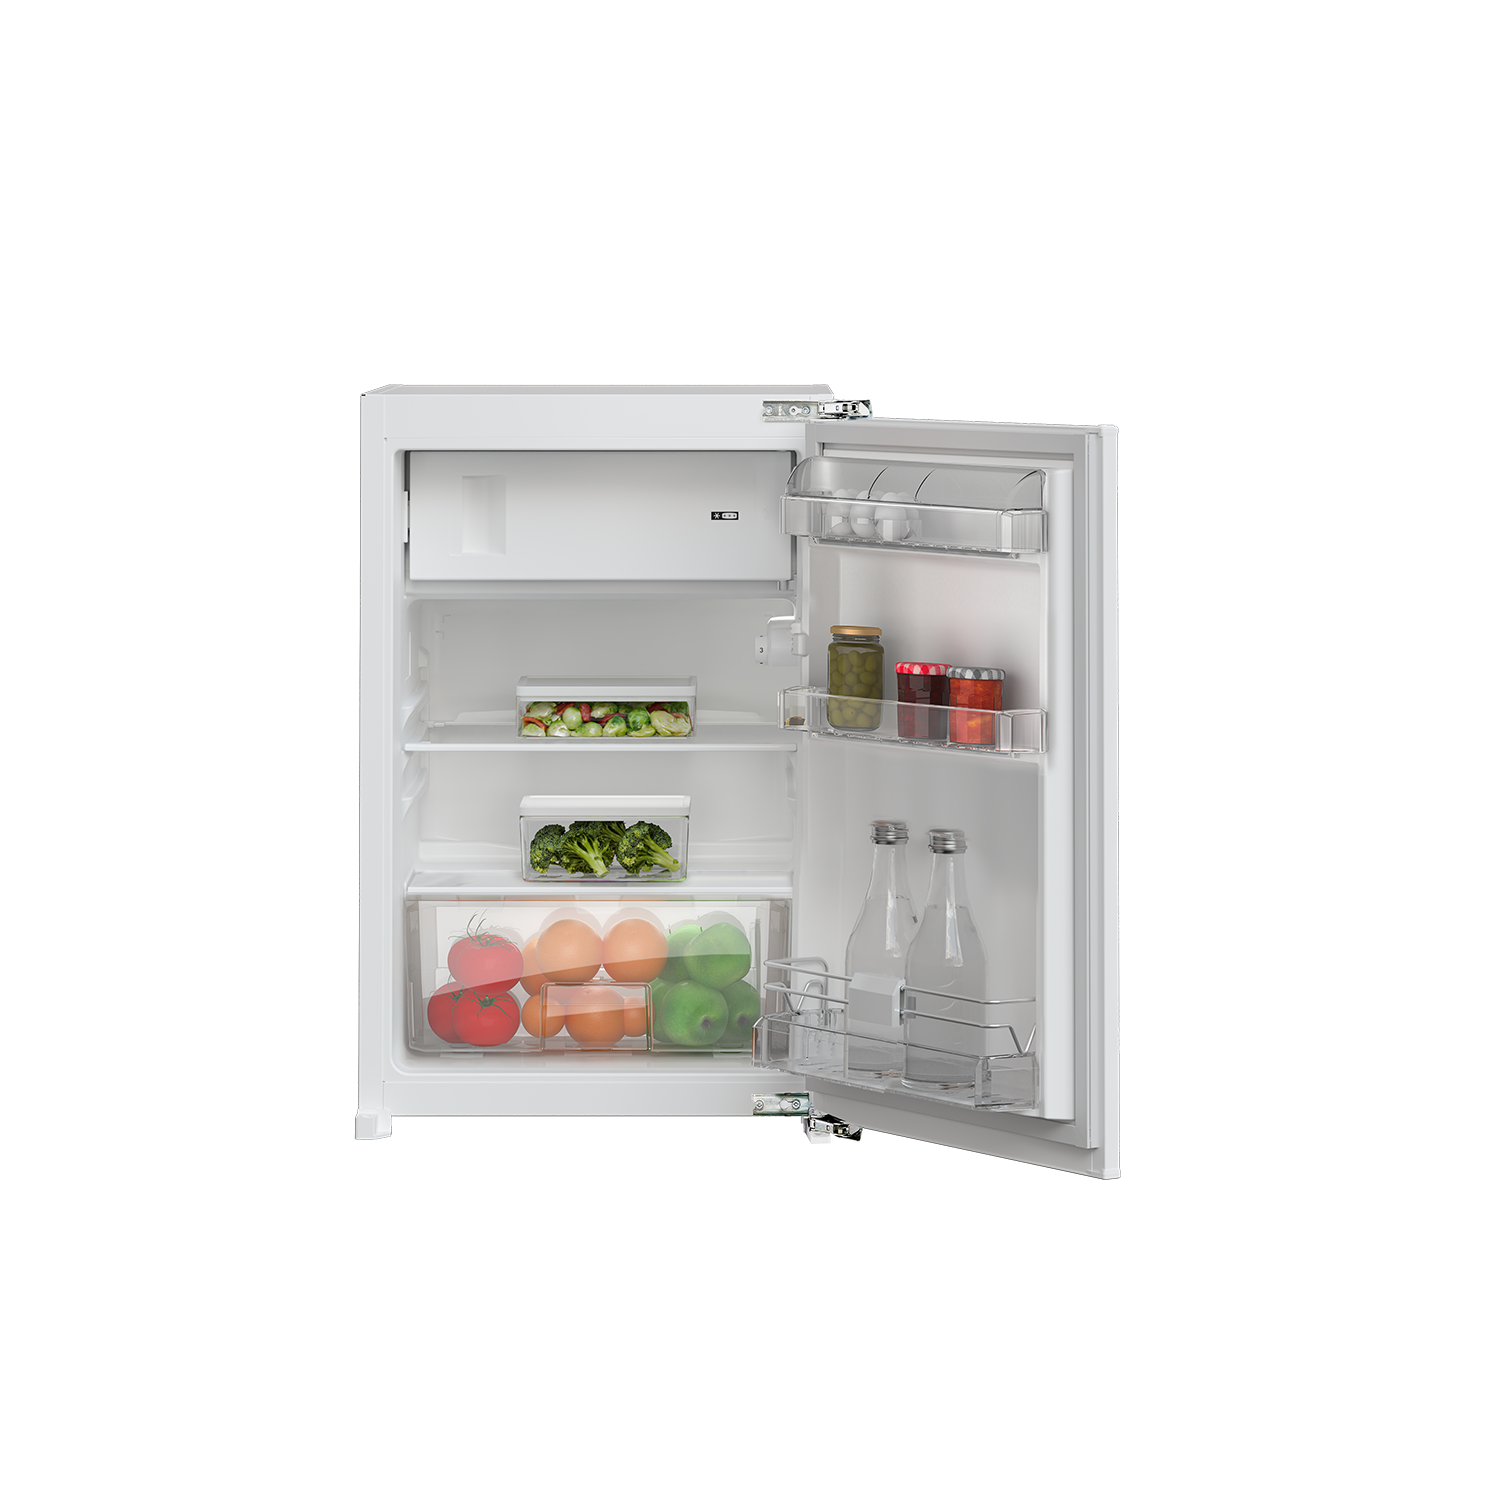 GTMI14141FN - Kühlschrank Kühlen kaufen - | Grundig jetzt Gefrieren & 